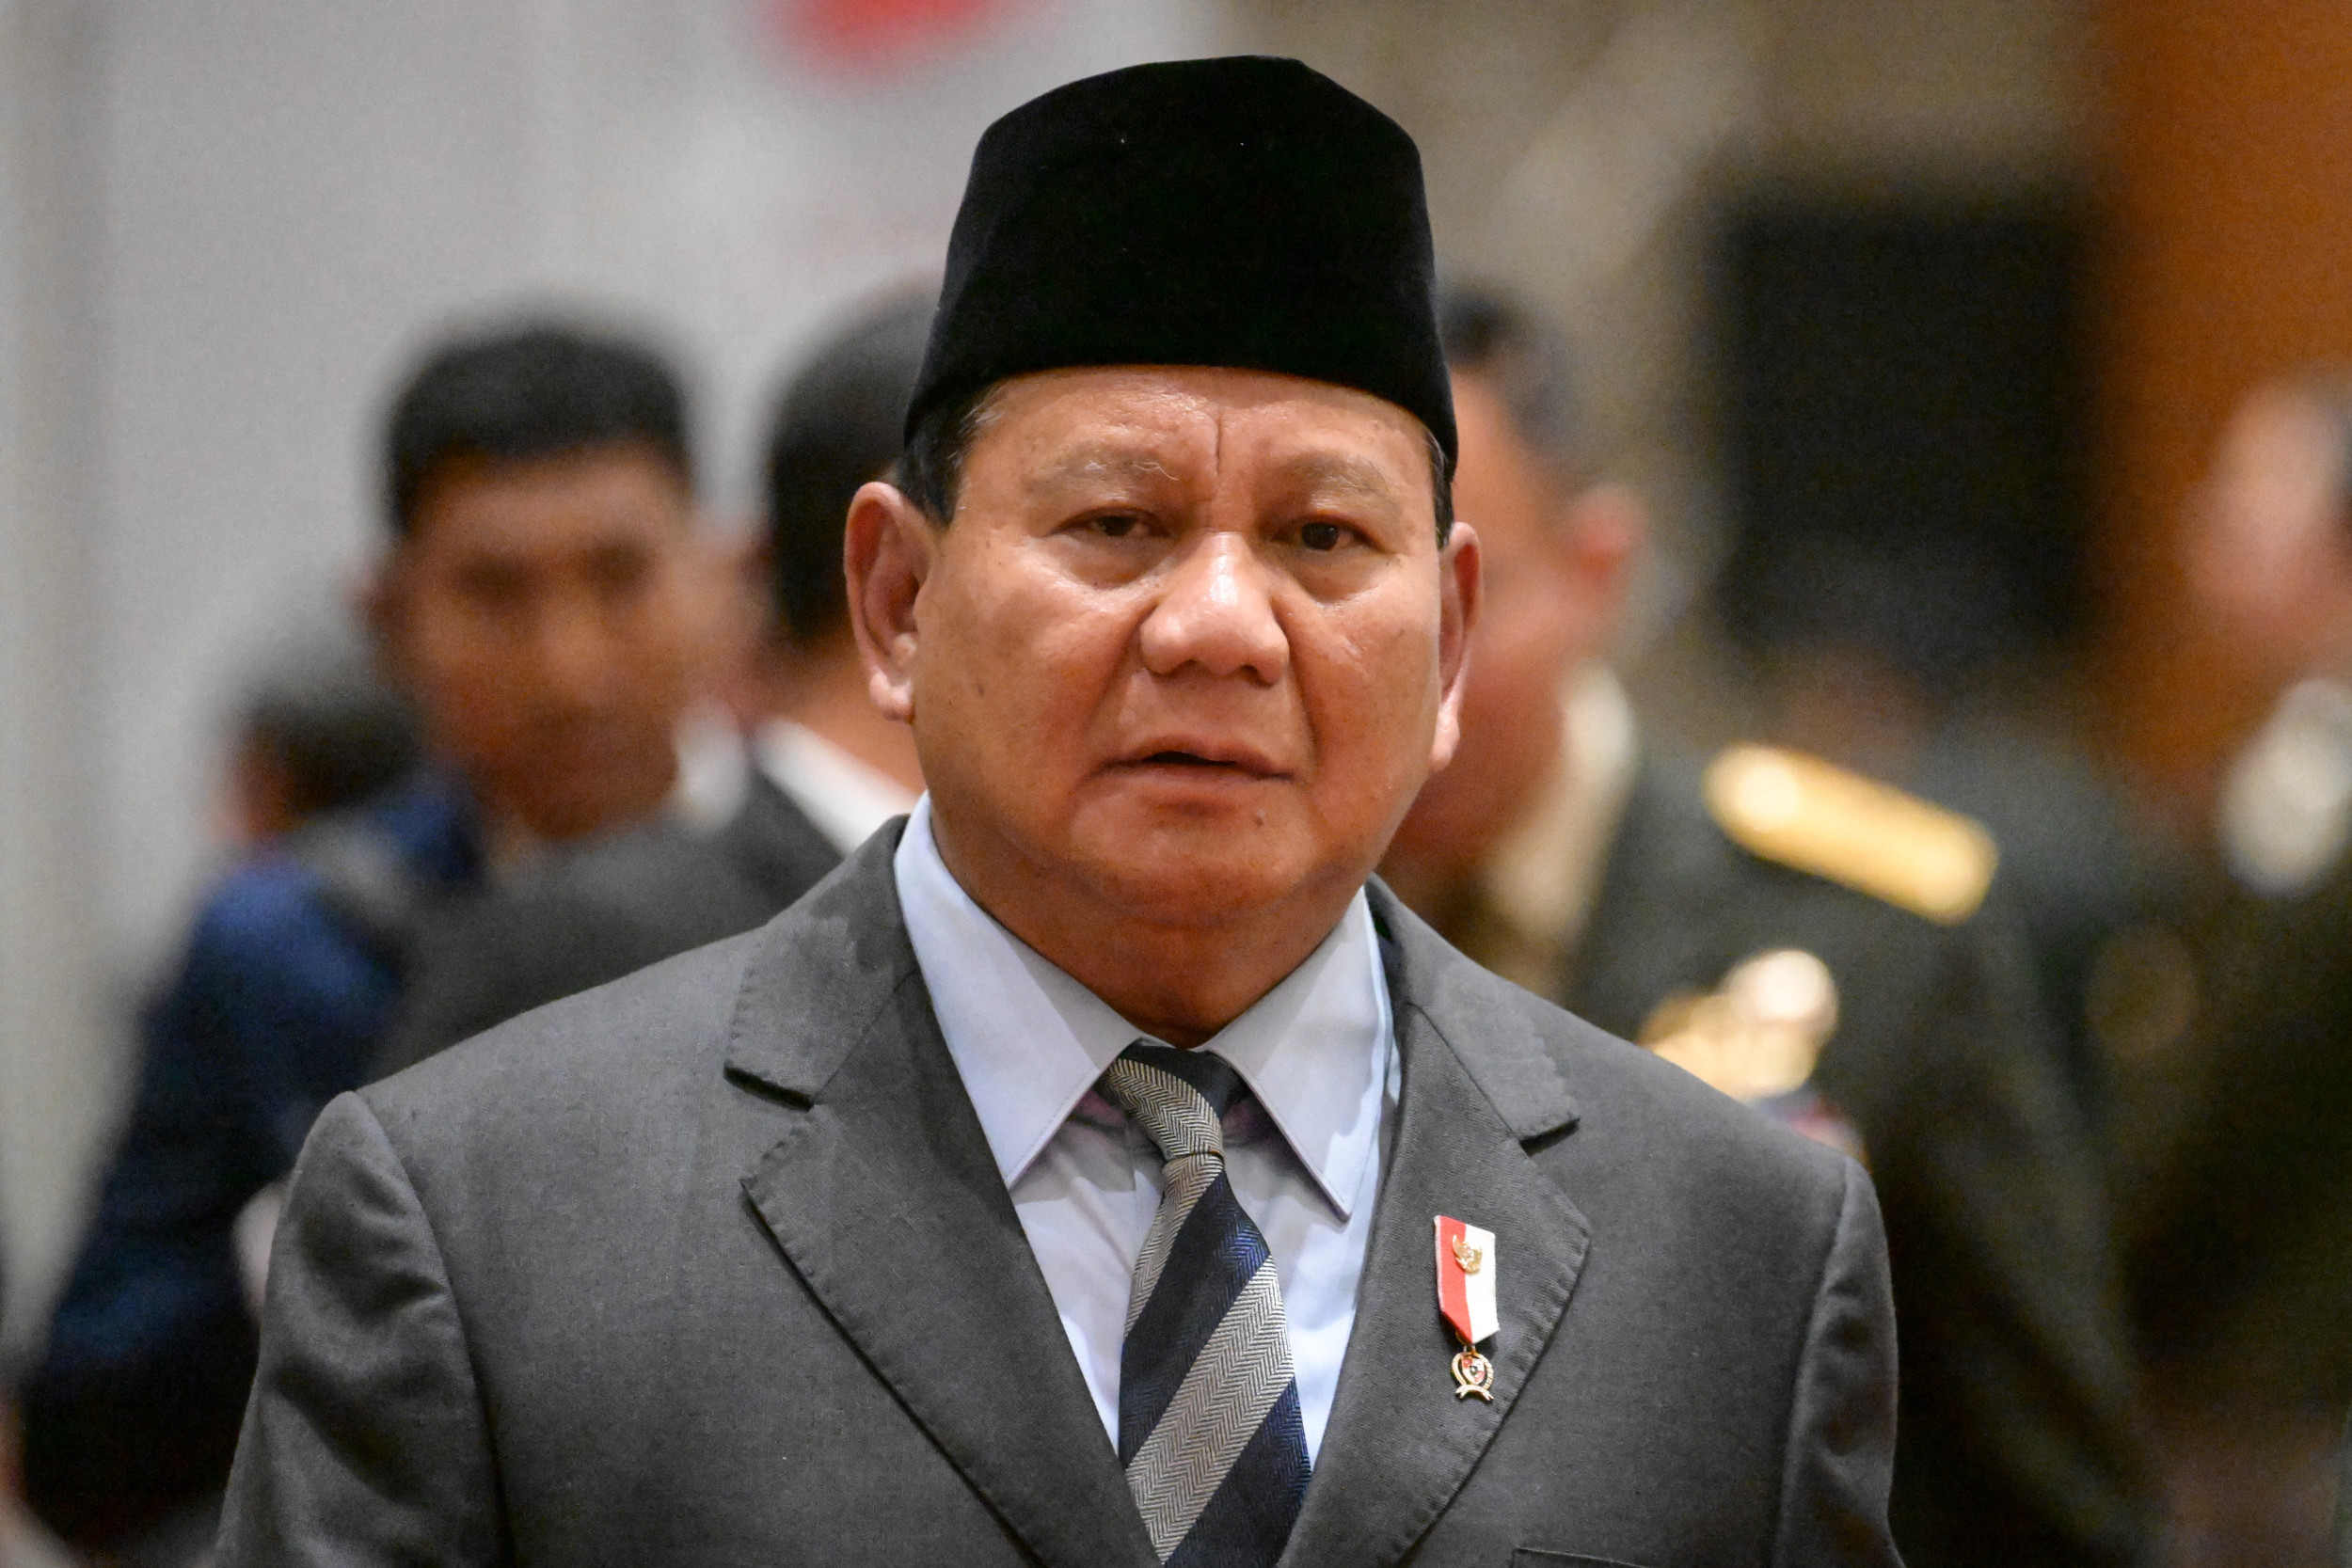 https://d.newsweek.com/en/full/2332017/indonesia-defense-minister-prabowo-subianto-asean.jpg